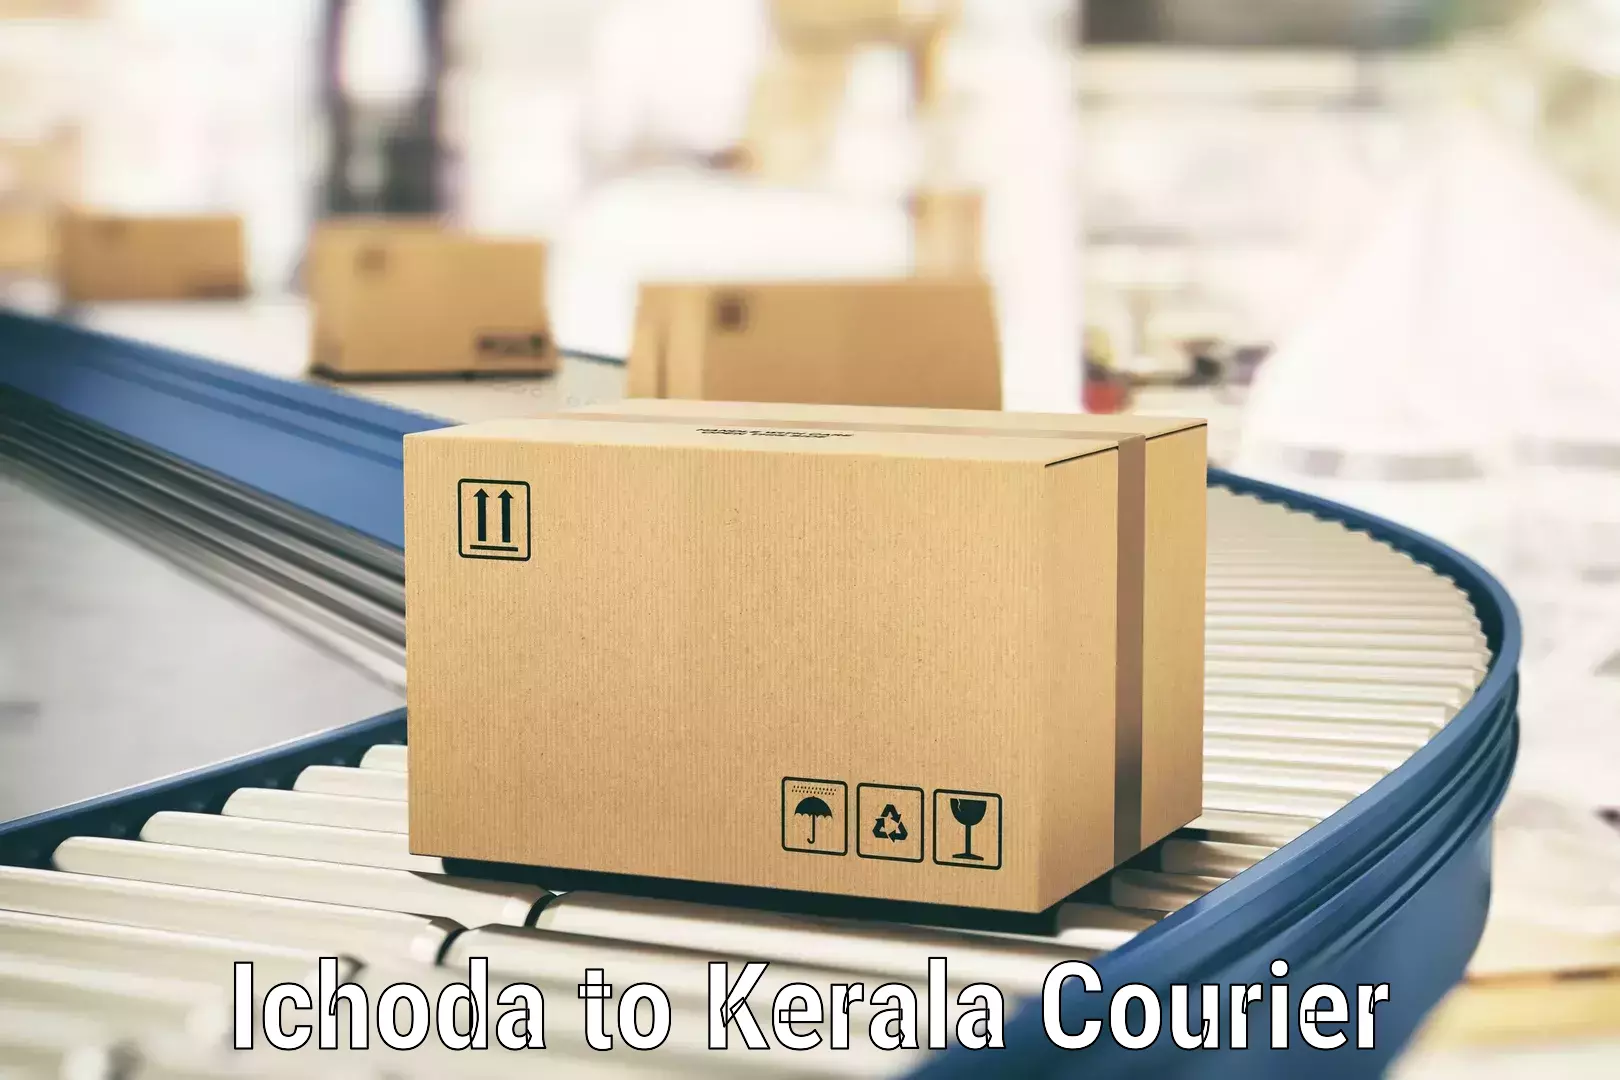 Global logistics network Ichoda to Kerala University Thiruvananthapuram